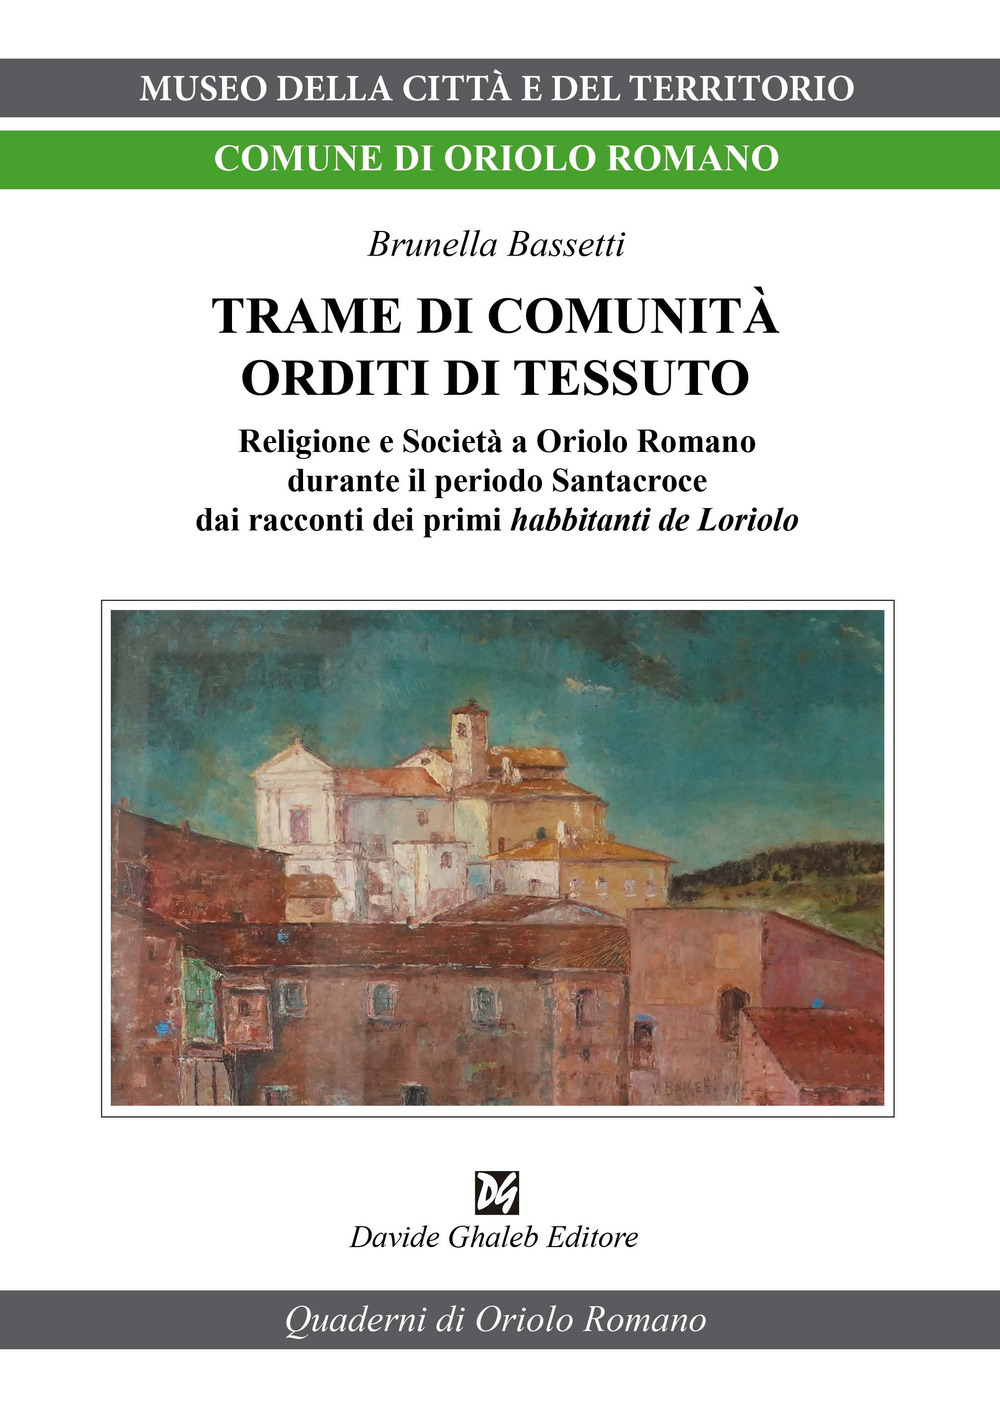 Libri Bassetti Brunella - Trame Di Comunita Orditi Di Tessuto NUOVO SIGILLATO, EDIZIONE DEL 03/05/2022 SUBITO DISPONIBILE